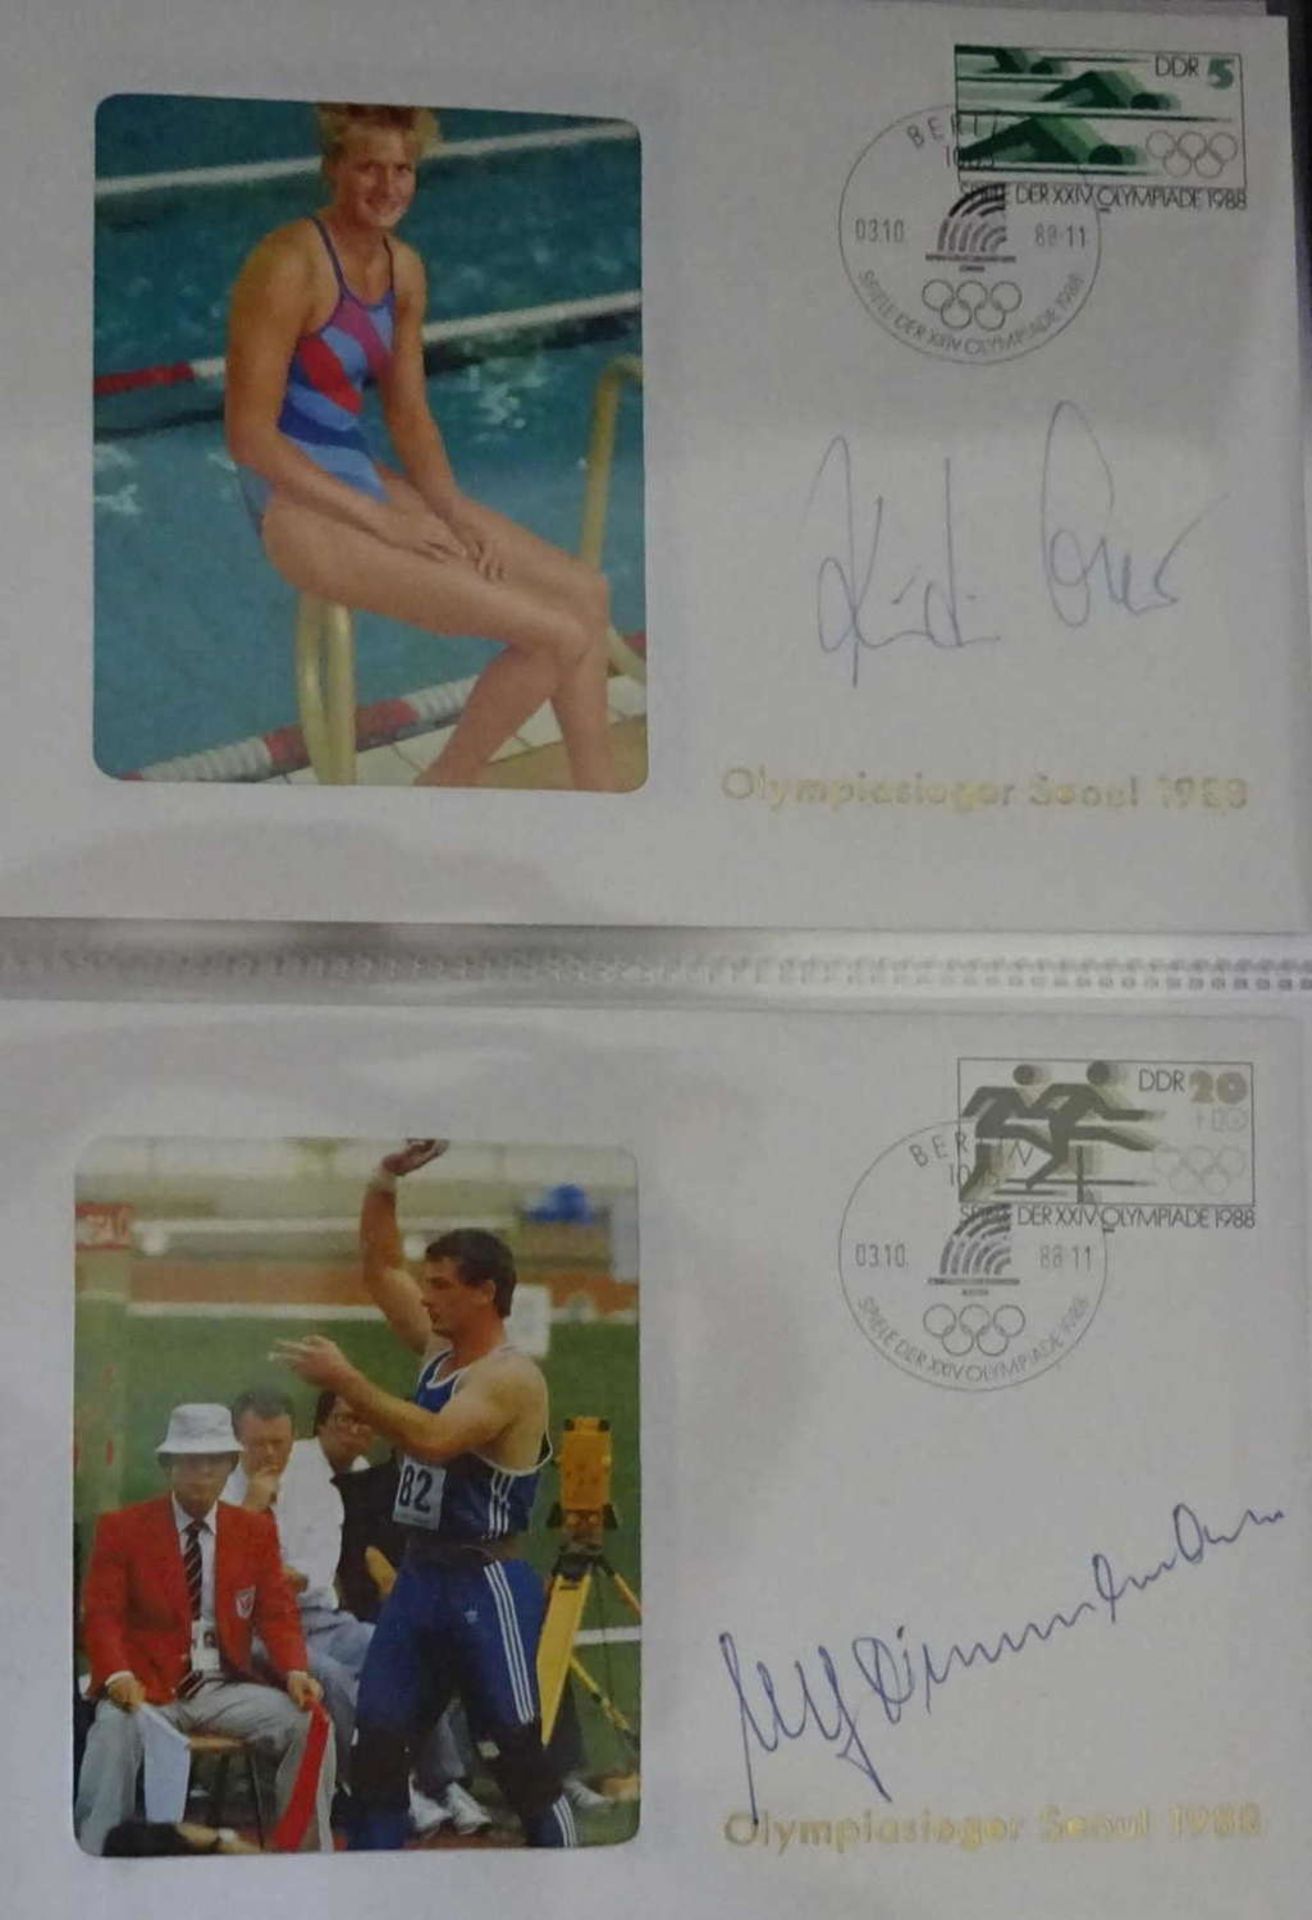 DDR Kassette mit Goldmedaillen Sieger "Seaul 1988". Jeder Beleg signiert. Diese Kassette war nur 250